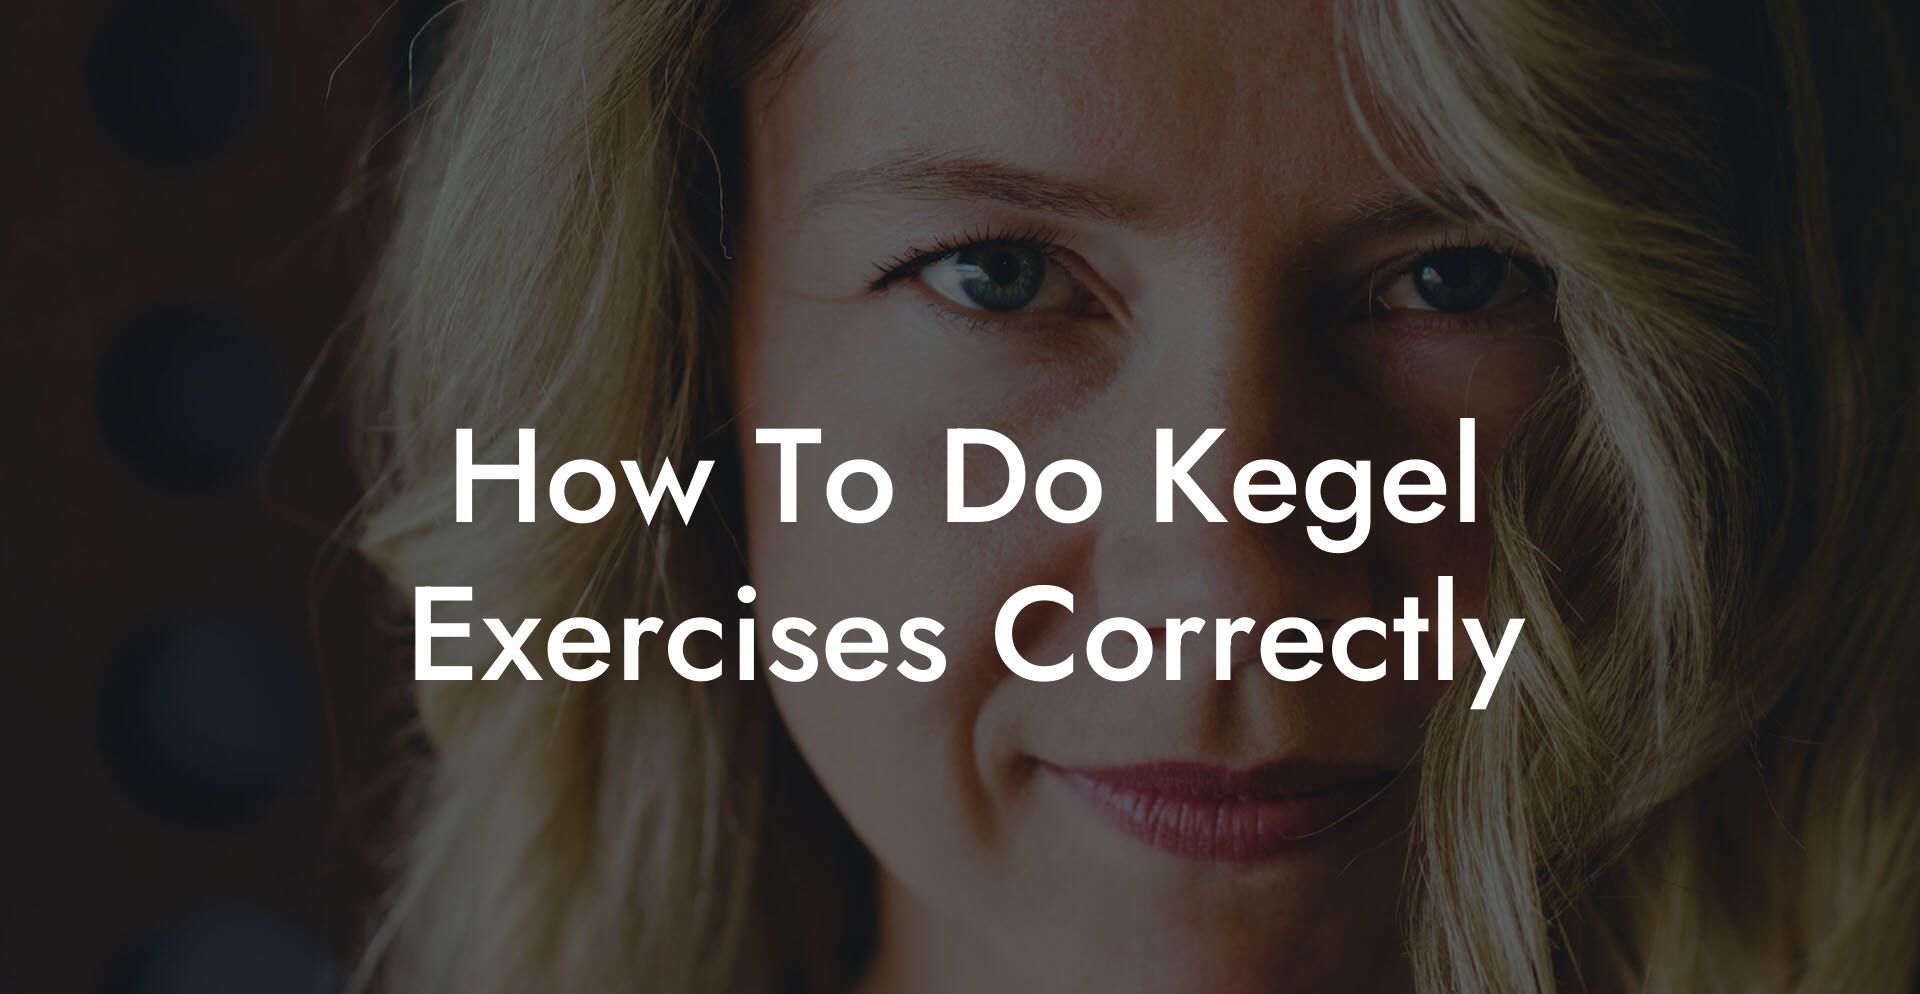 How To Do Kegel Exercises Correctly